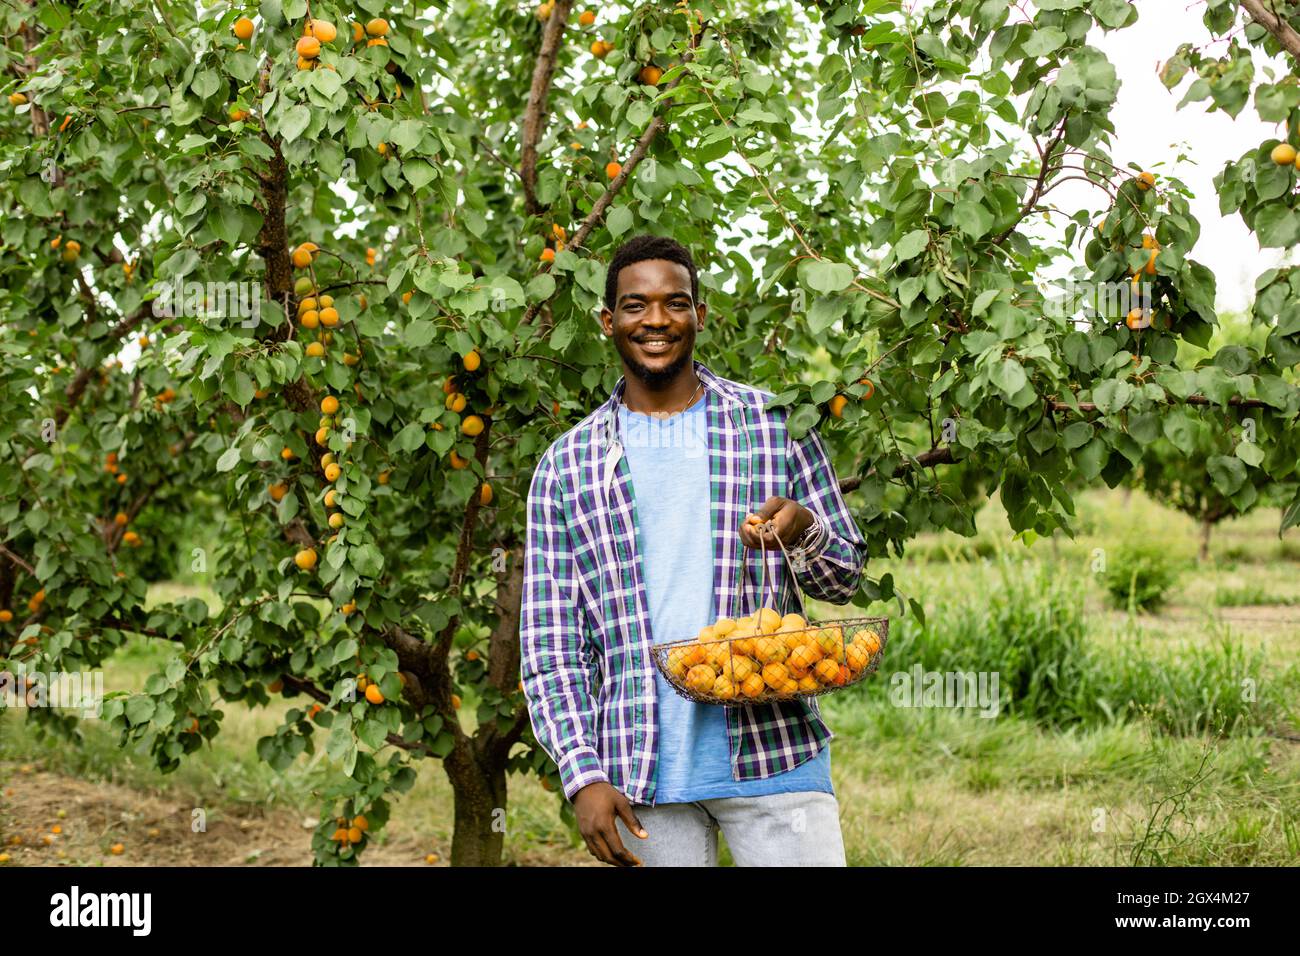 Der Afrikaner steht im Obstgarten und hält einen Korb mit reifen Aprikosen Stockfoto